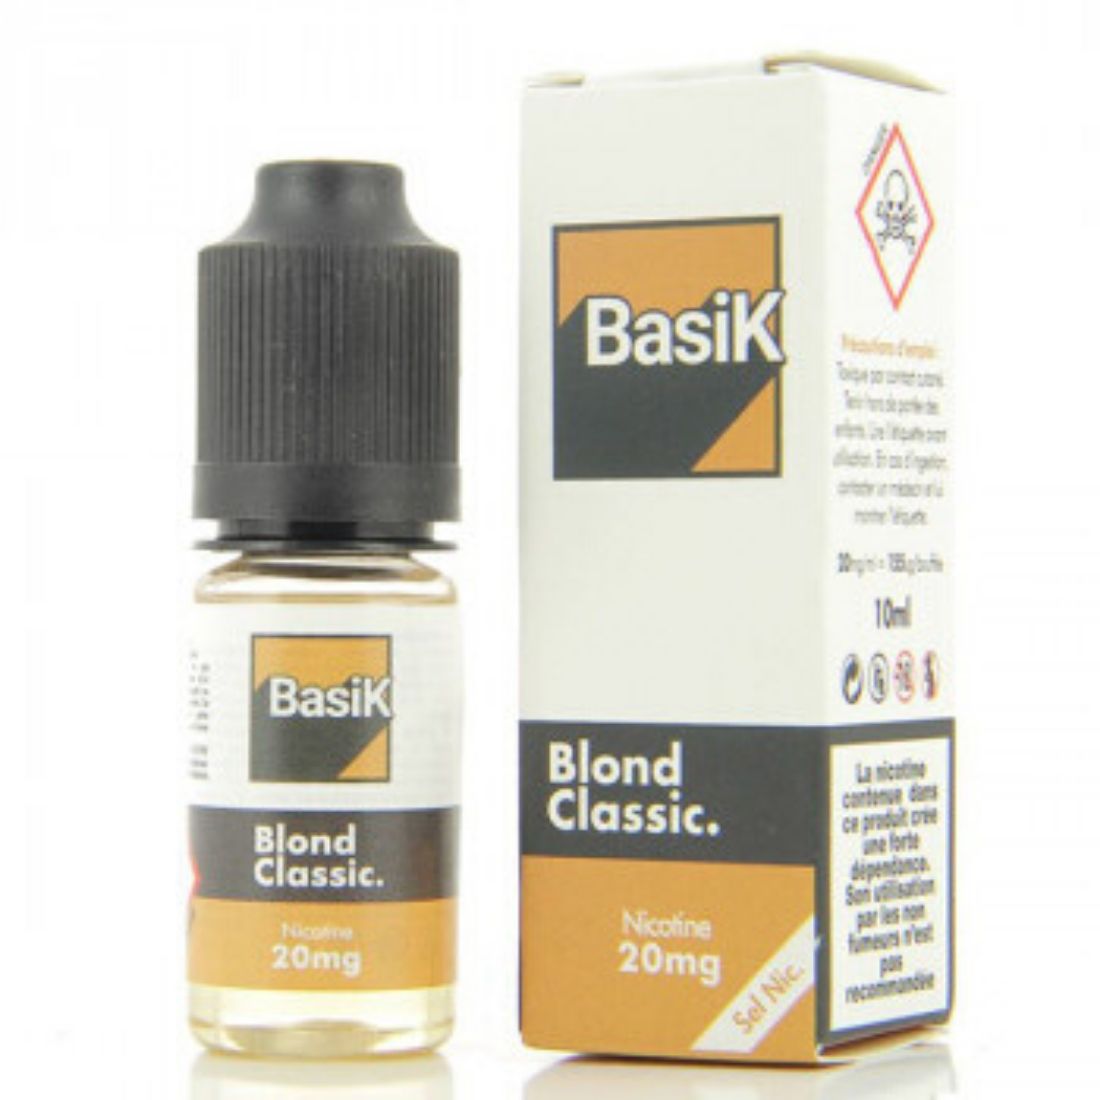 Basik Blond Classic Nic Salt 10ml